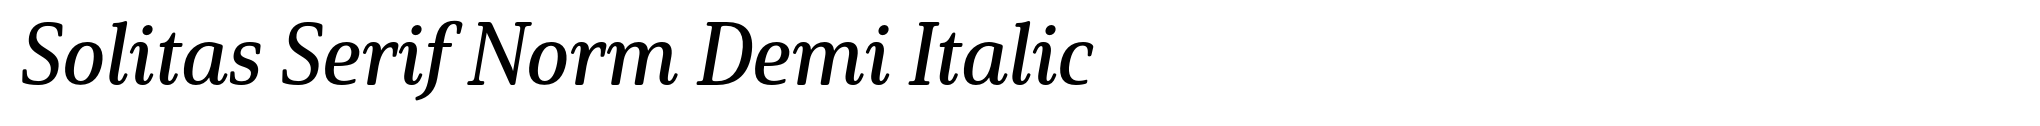 Solitas Serif Norm Demi Italic image